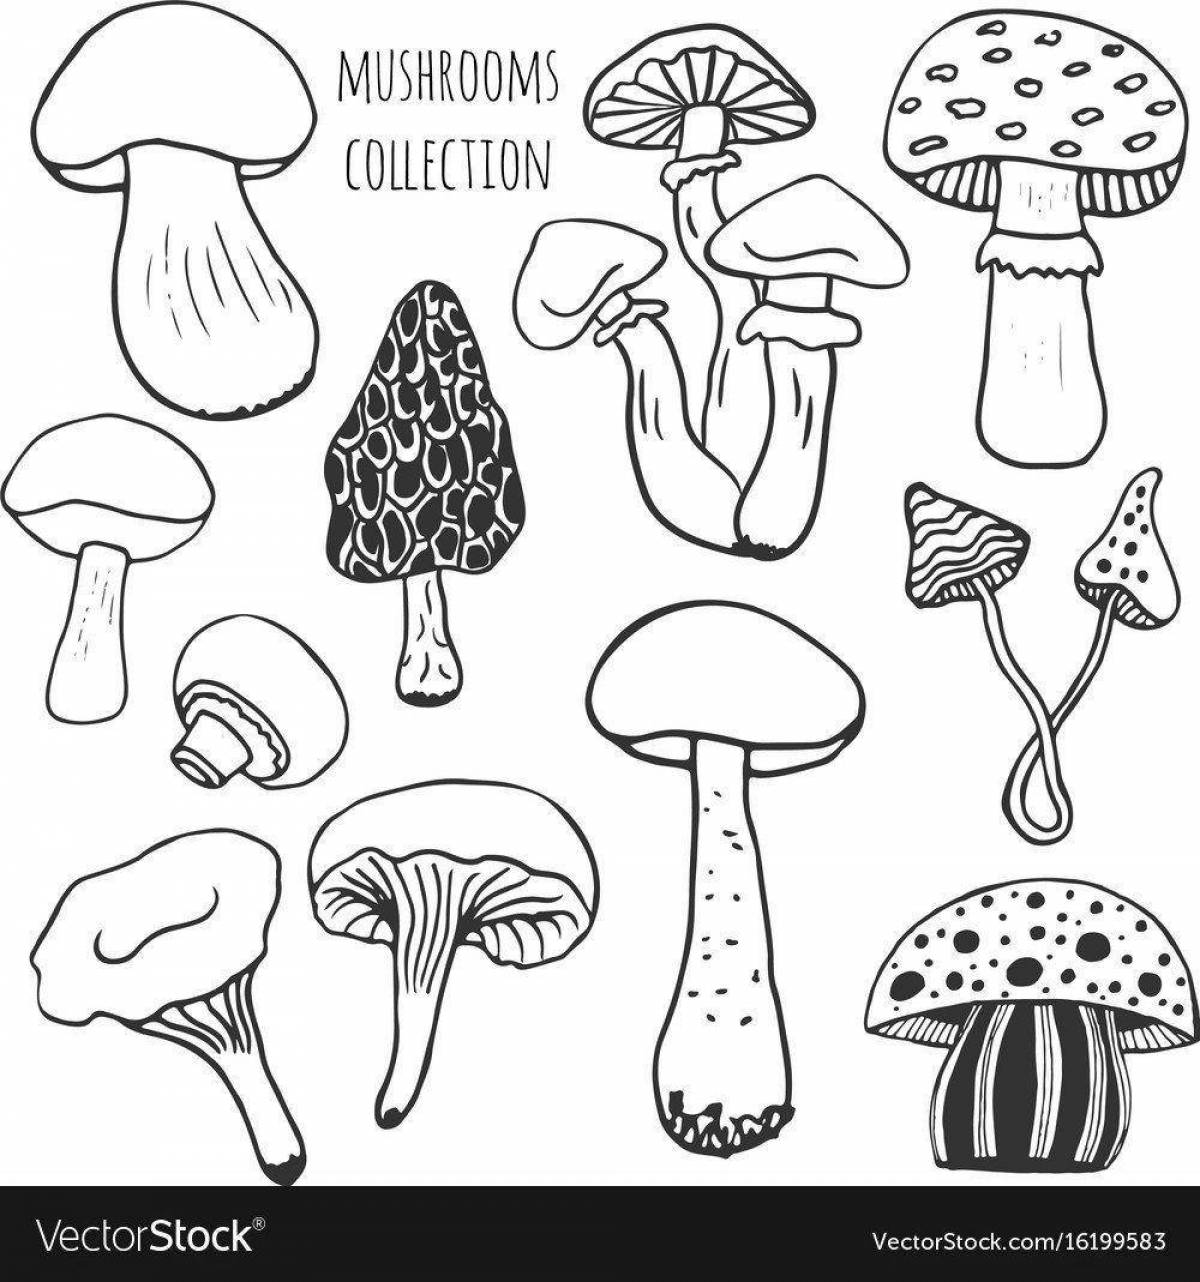 Coloring colorful edible mushrooms